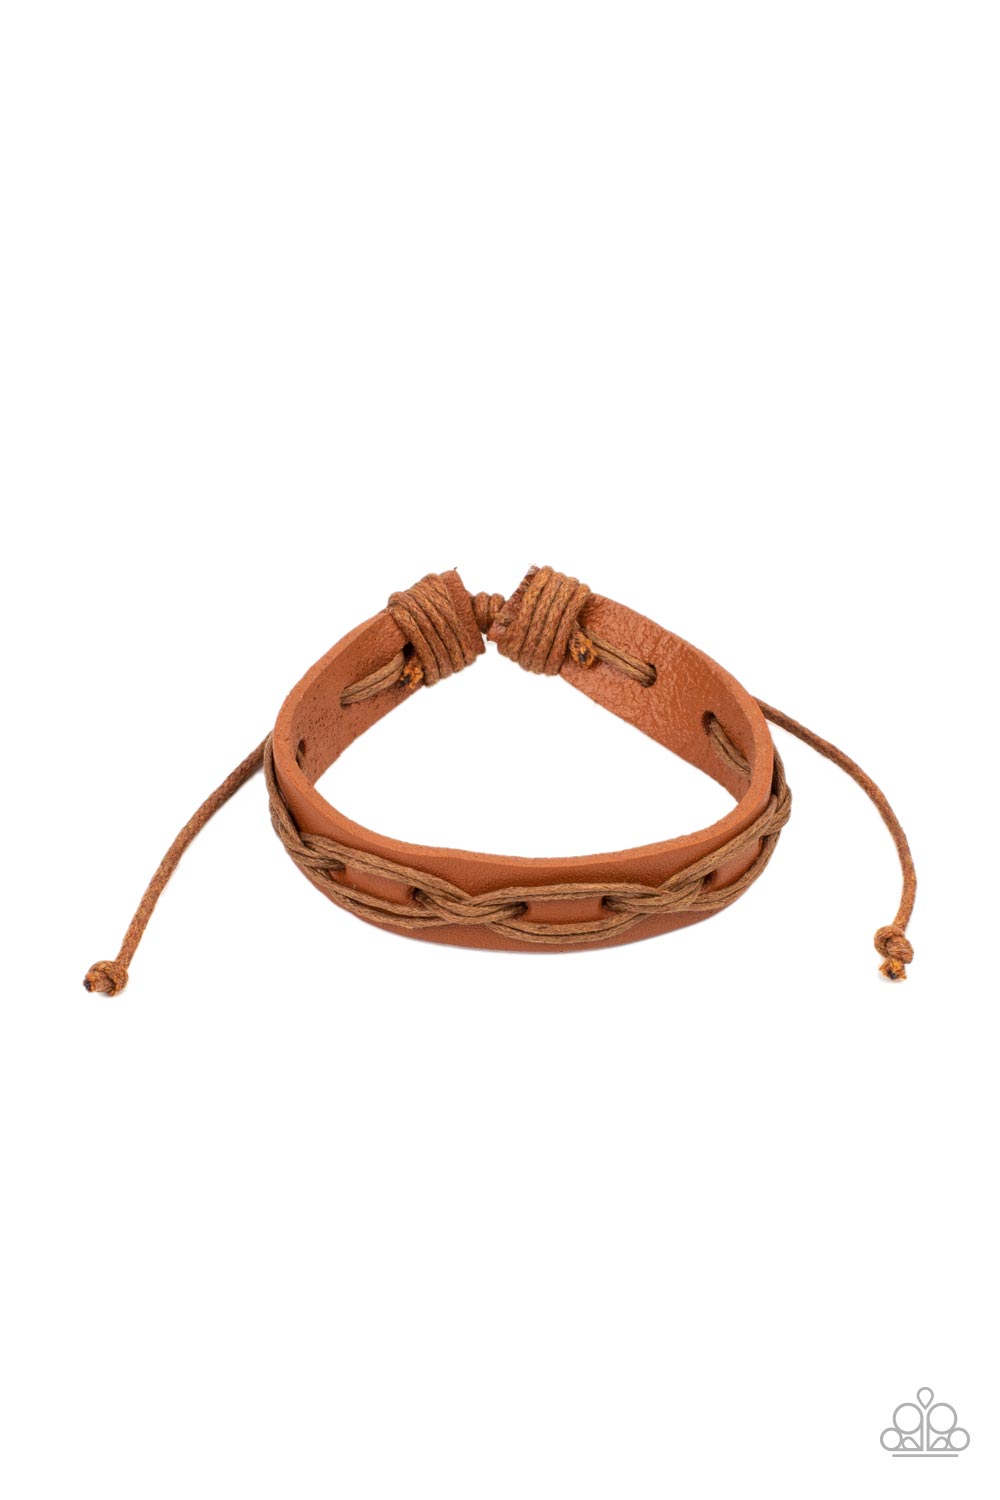 Macho Mystery - Brown Urban Bracelet freeshipping - JewLz4u Gemstone Gallery